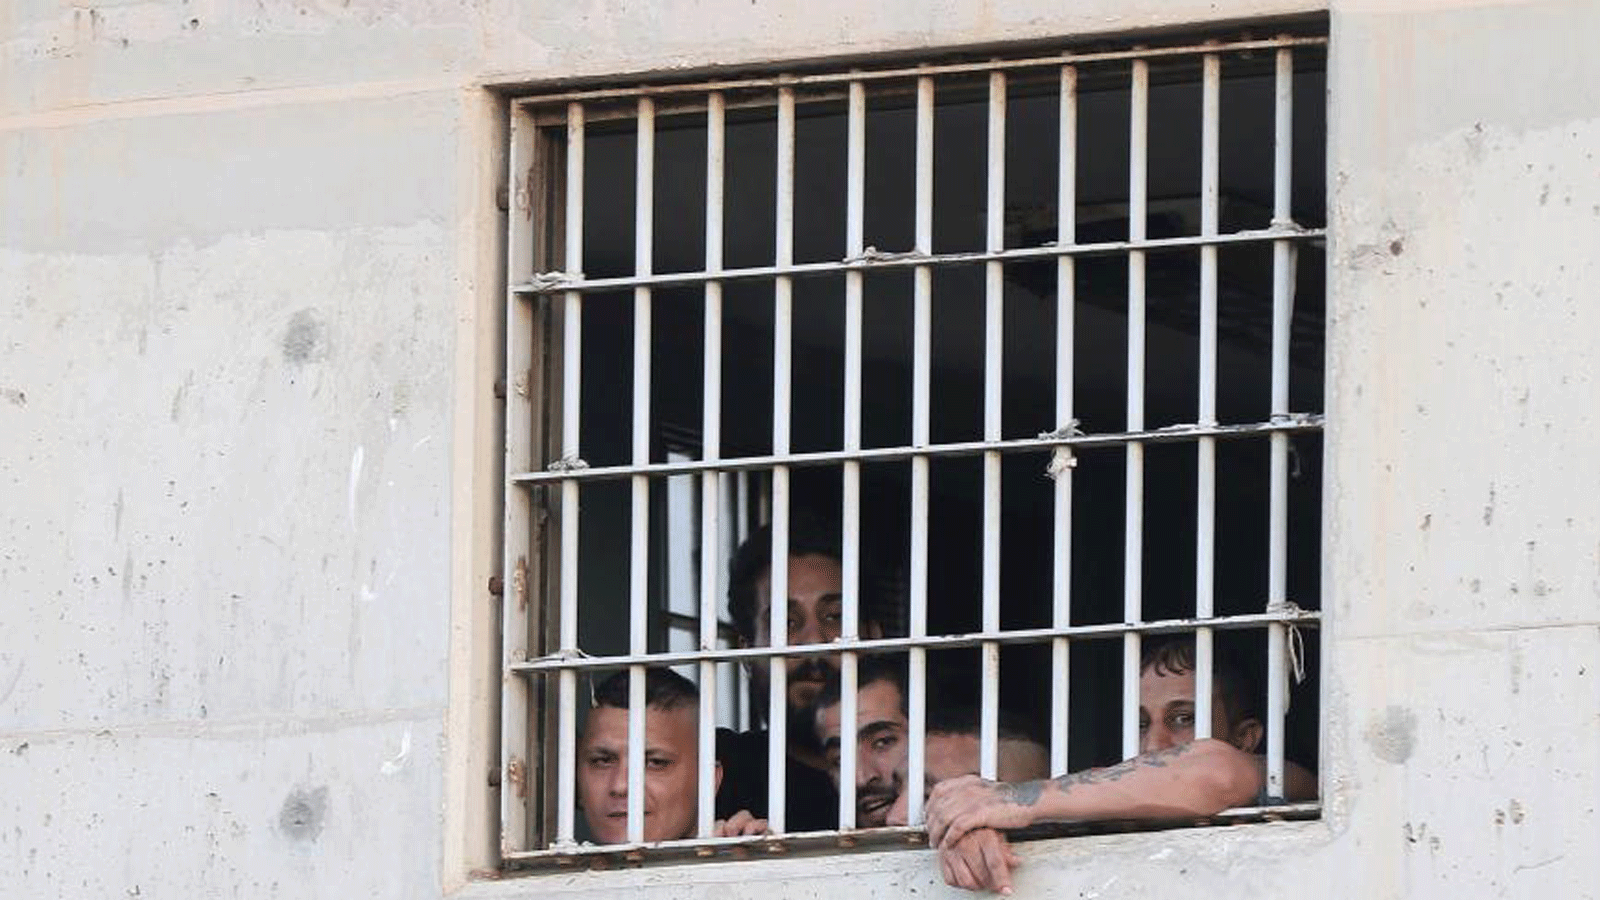 معتقلون ينظرون من نافذة مركز إعادة التأهيل في الزرقاء، شرق عمان، في 11 تموز/يوليو 2018